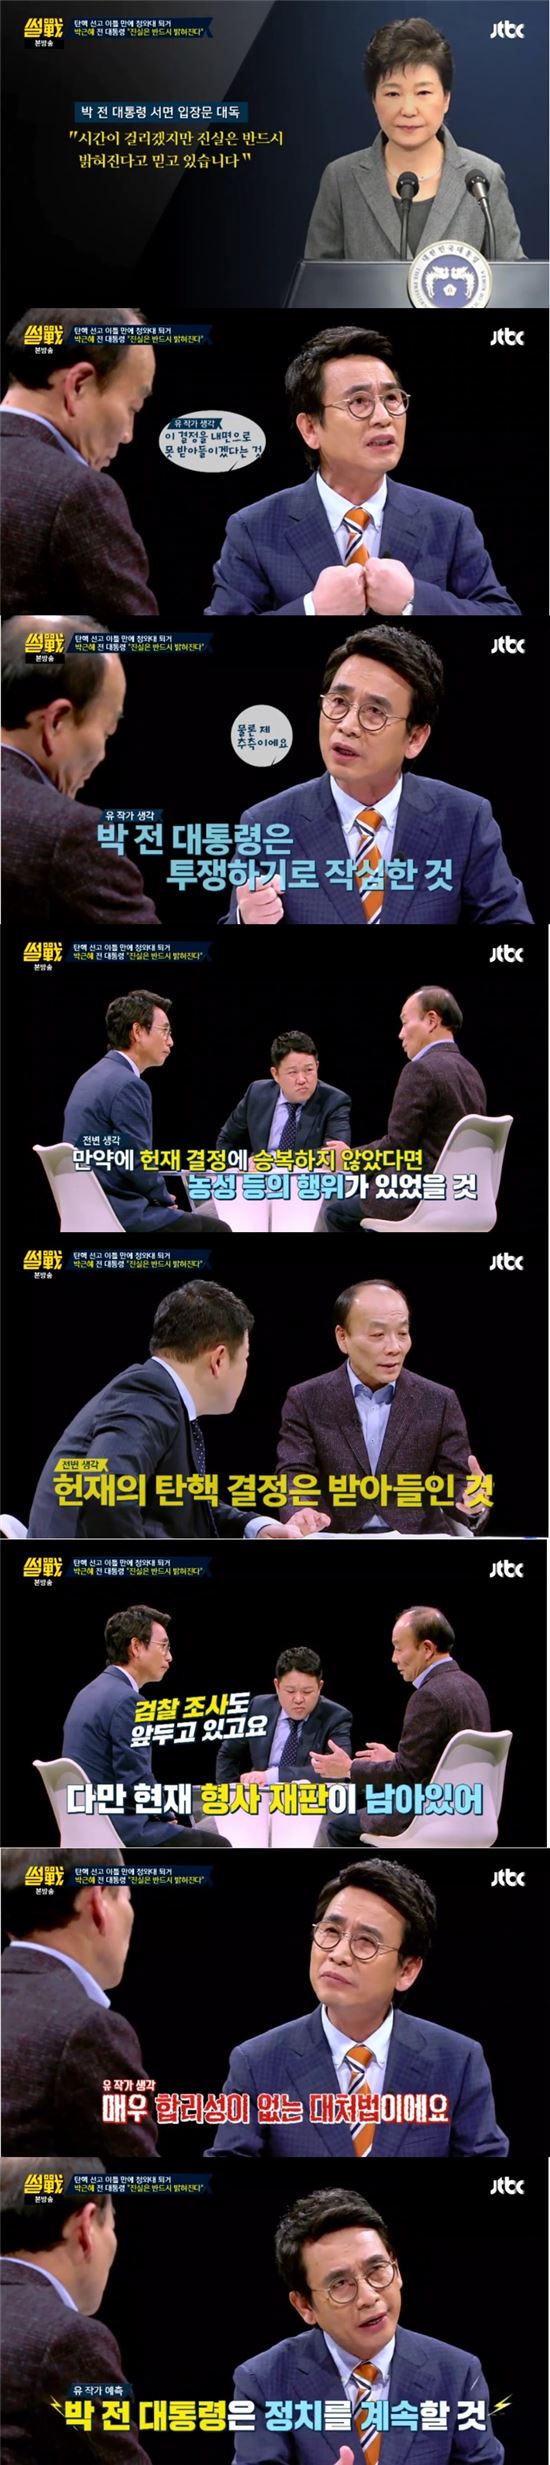 '썰전' "검찰 때문" vs "헌재 불복" …朴 진실 발언 공방